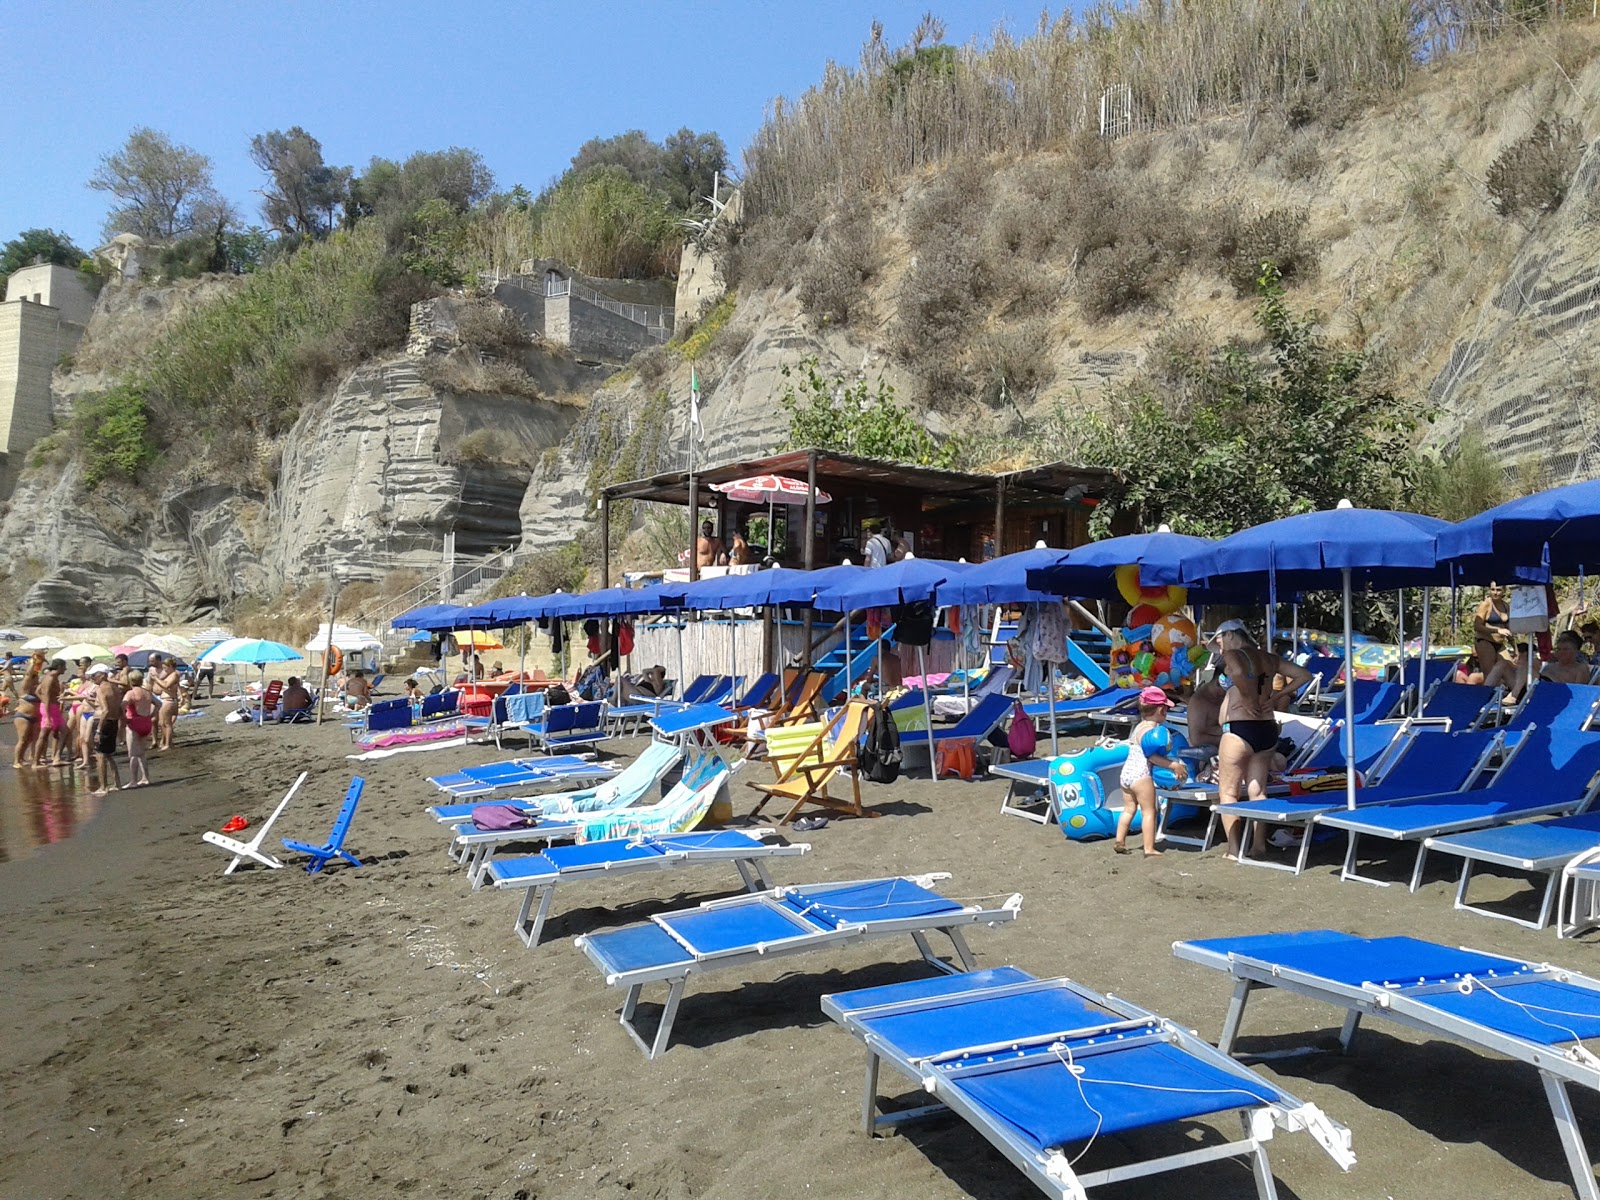 Foto de Spiaggia Chiaia con muy limpio nivel de limpieza